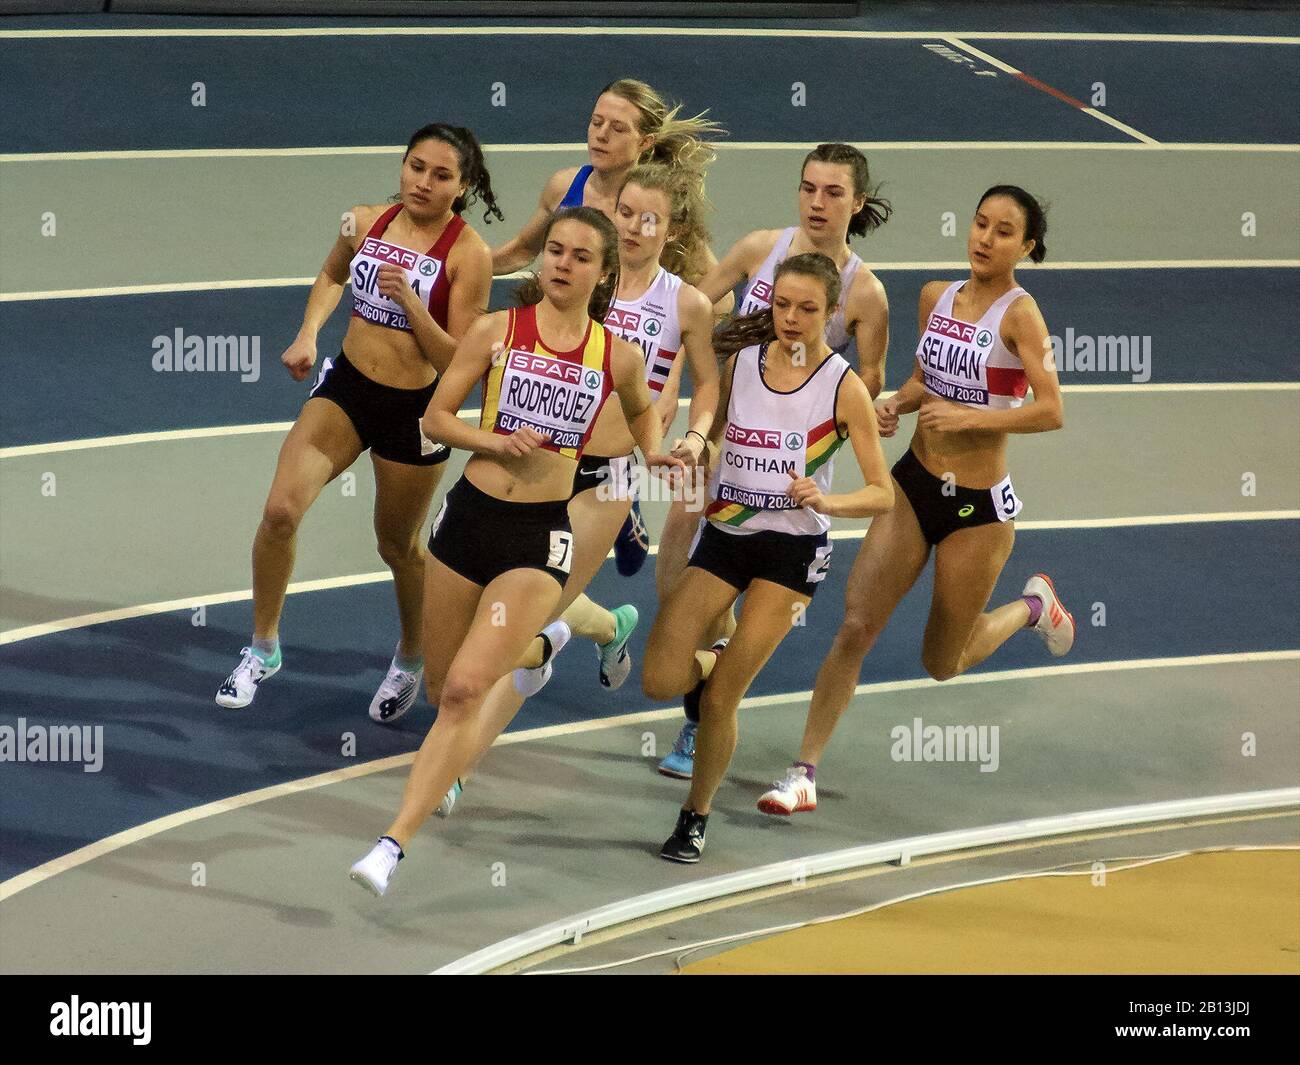 Glasgow, Escocia, Reino Unido. 22 de febrero de 2020. Competidores en acción durante los 1,500 metros femeninos (heat 1), durante el día 1 del Campeonato Británico de Atletismo de GLASGOW 2020, en el Emirates Arena. Crédito: Iain Mcguinness/Alamy Live News Foto de stock